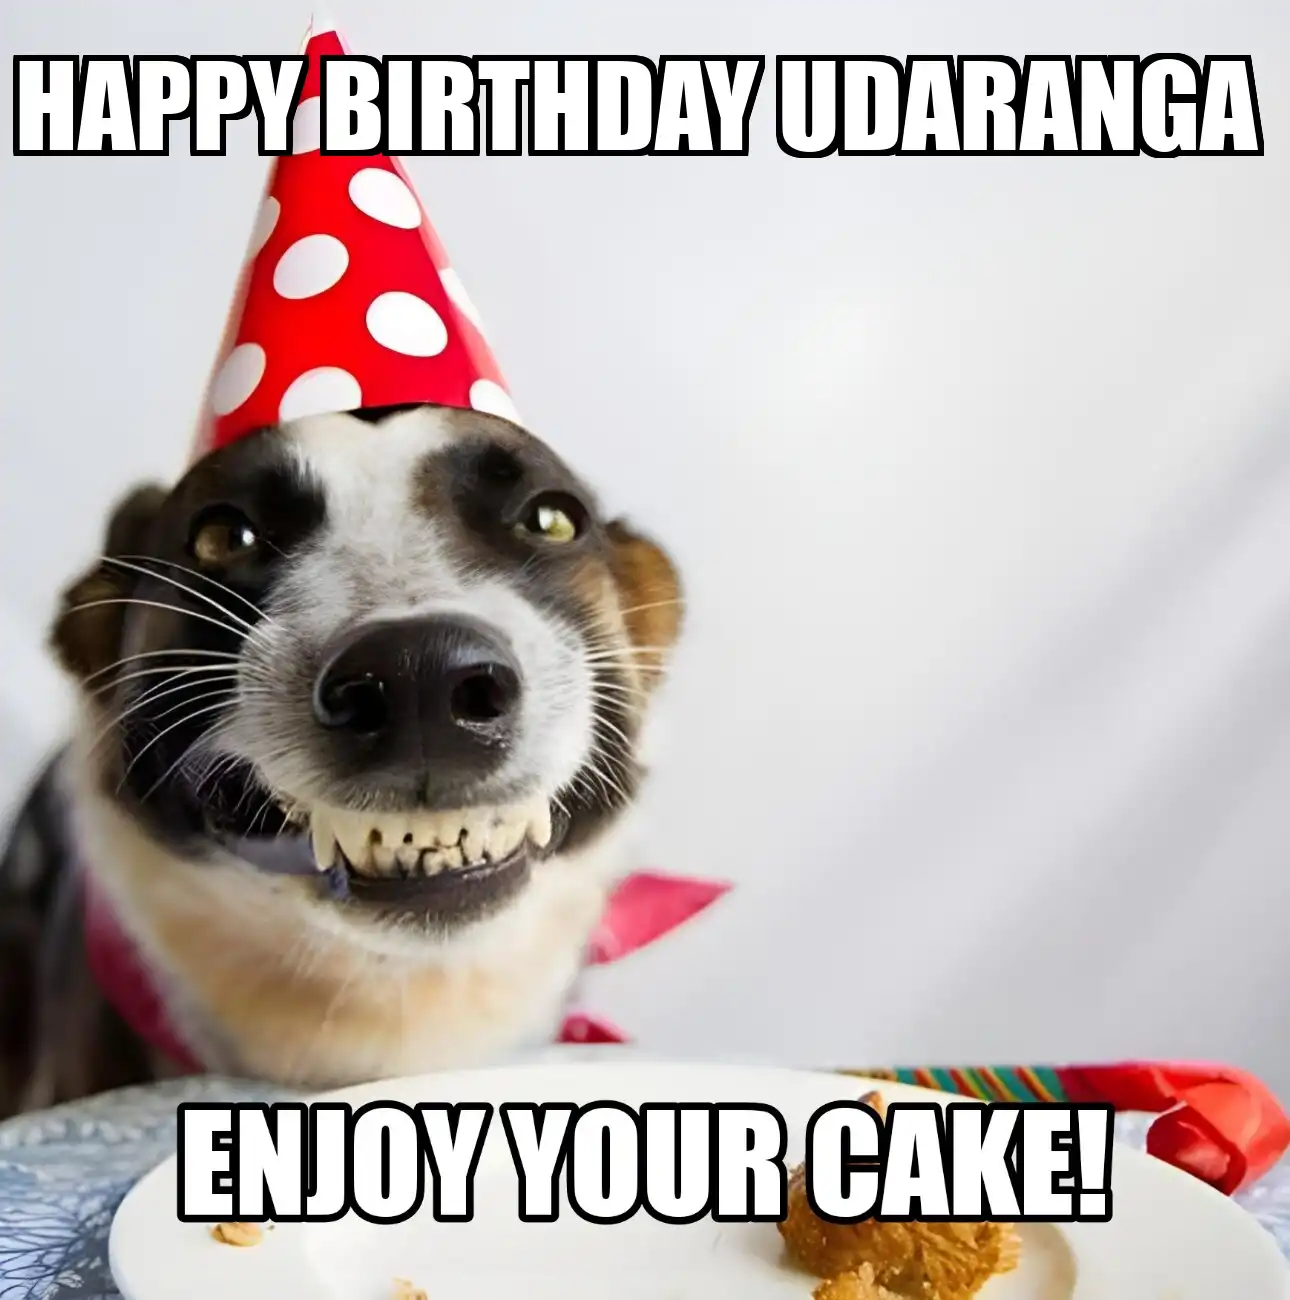 Happy Birthday Udaranga Enjoy Your Cake Dog Meme